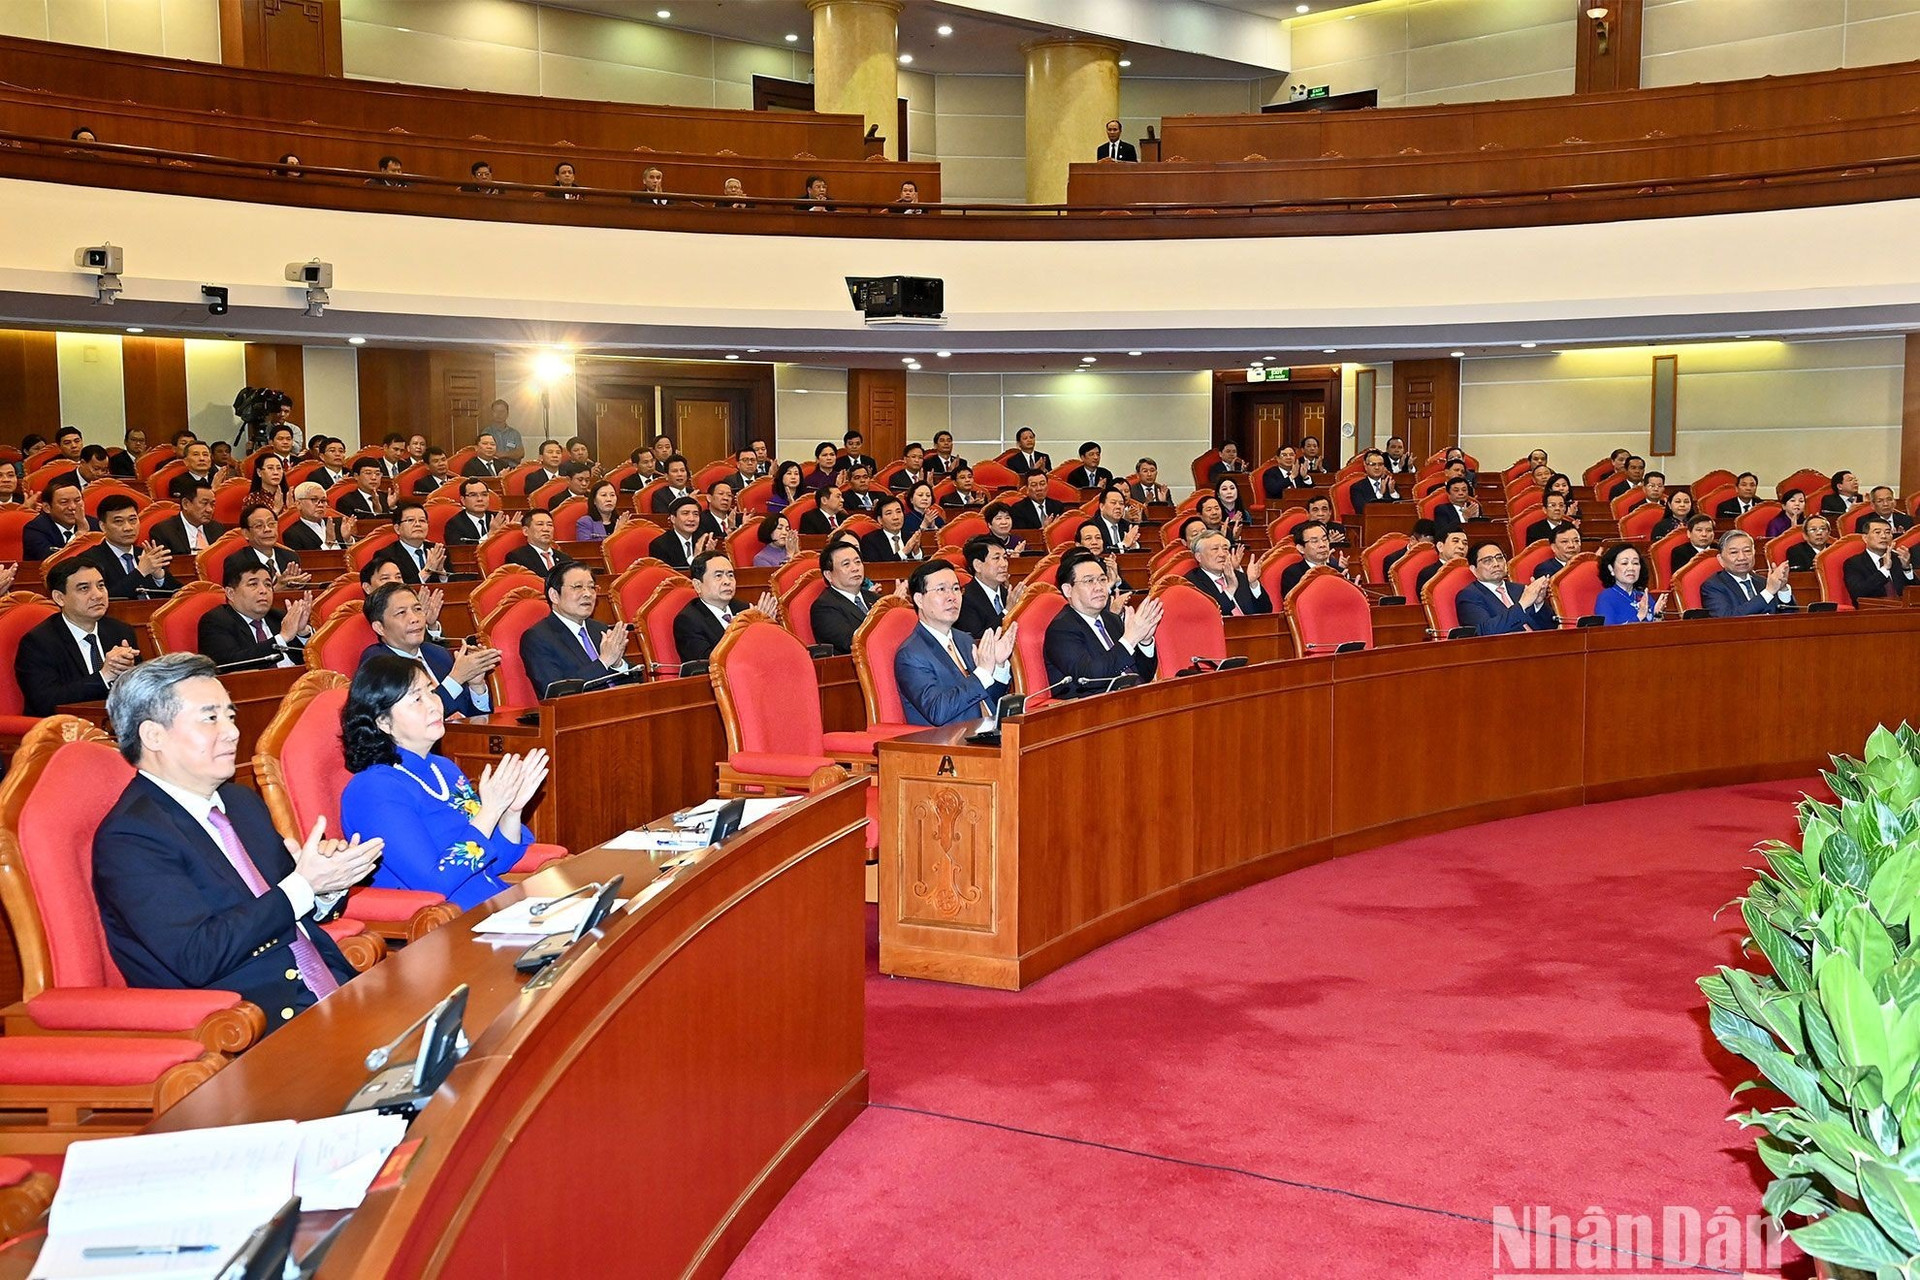 Các đồng chí lãnh đạo Đảng, Nhà nước và các đại biểu dự phiên bế mạc hội nghị.